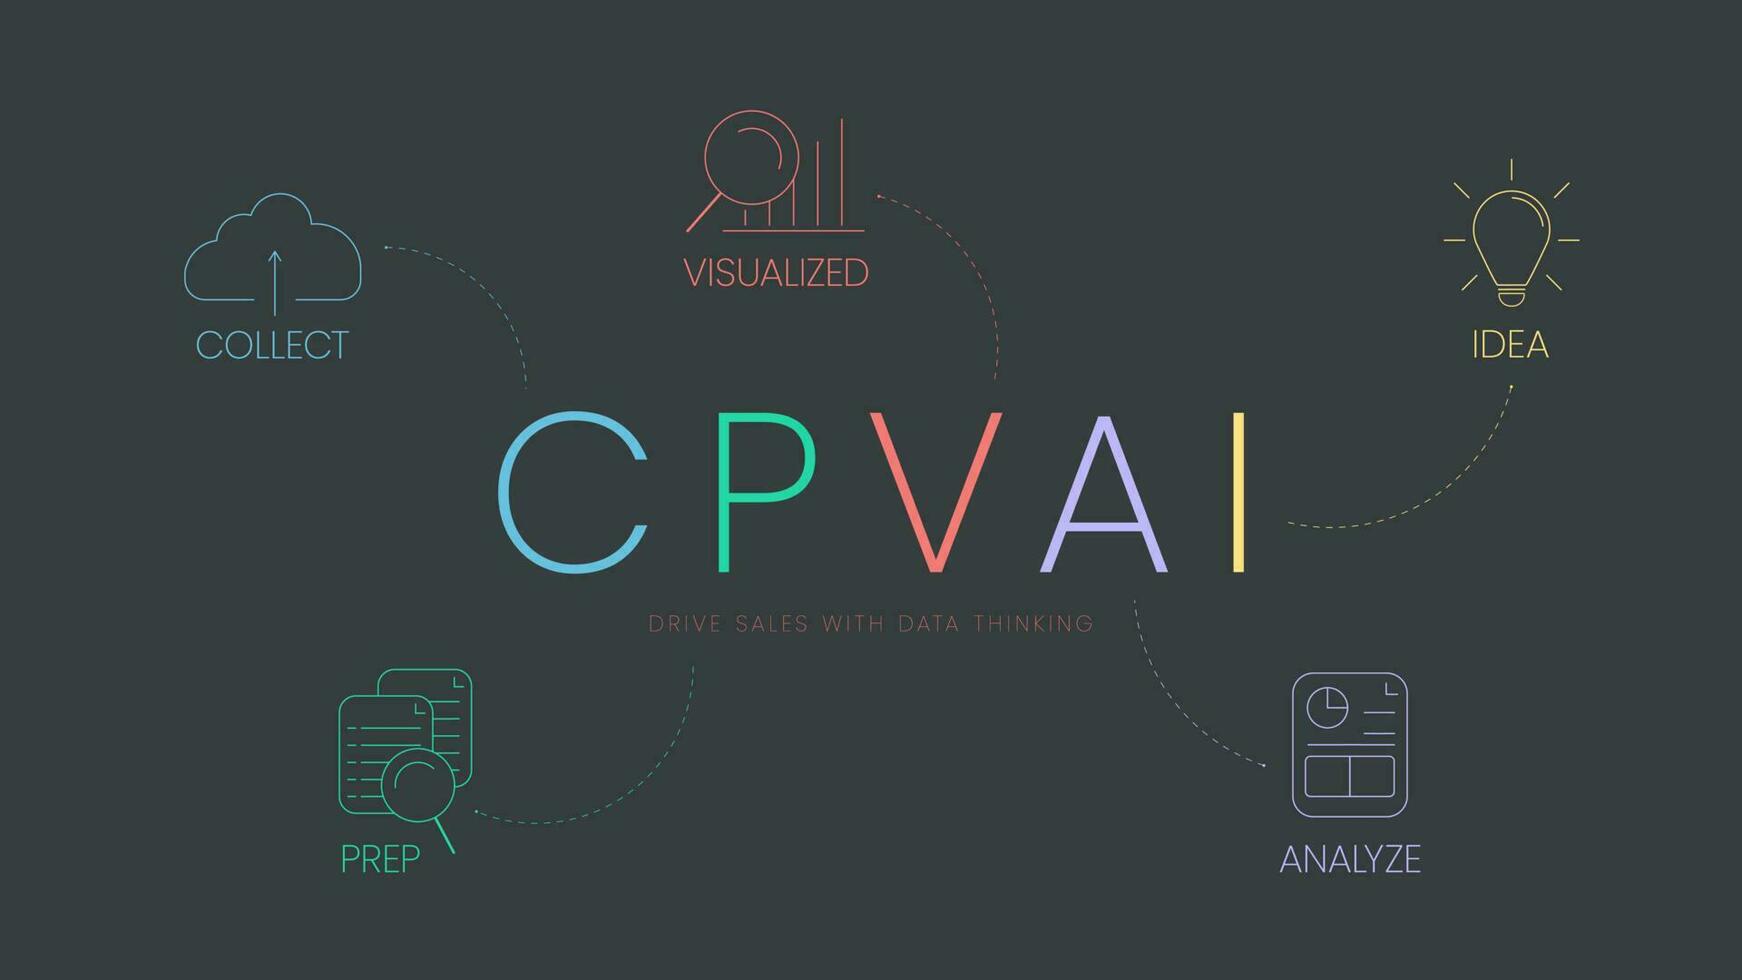 cpvai modell analys infographic med ikon mall har 5 steg sådan som samla, förbereda, visualiserat, analysera och aning. kör försäljning med data tänkande begrepp. företag marknadsföring presentation glida vektor